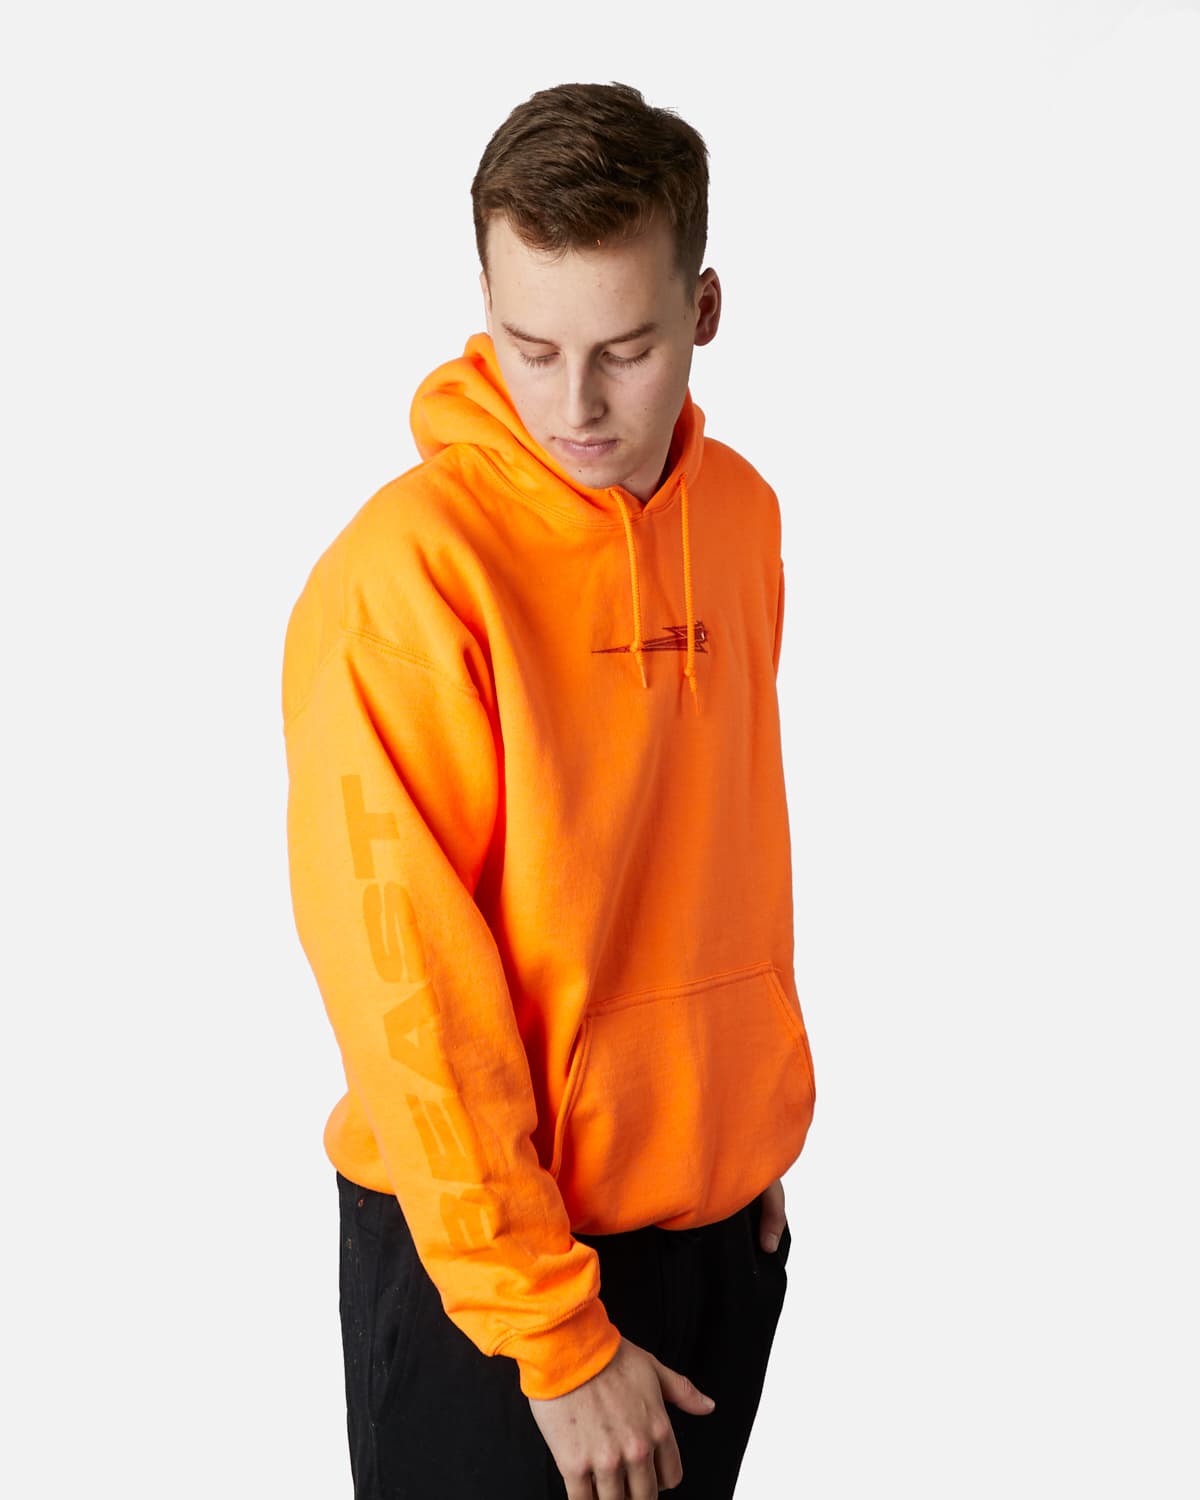 orange pullover hoodie